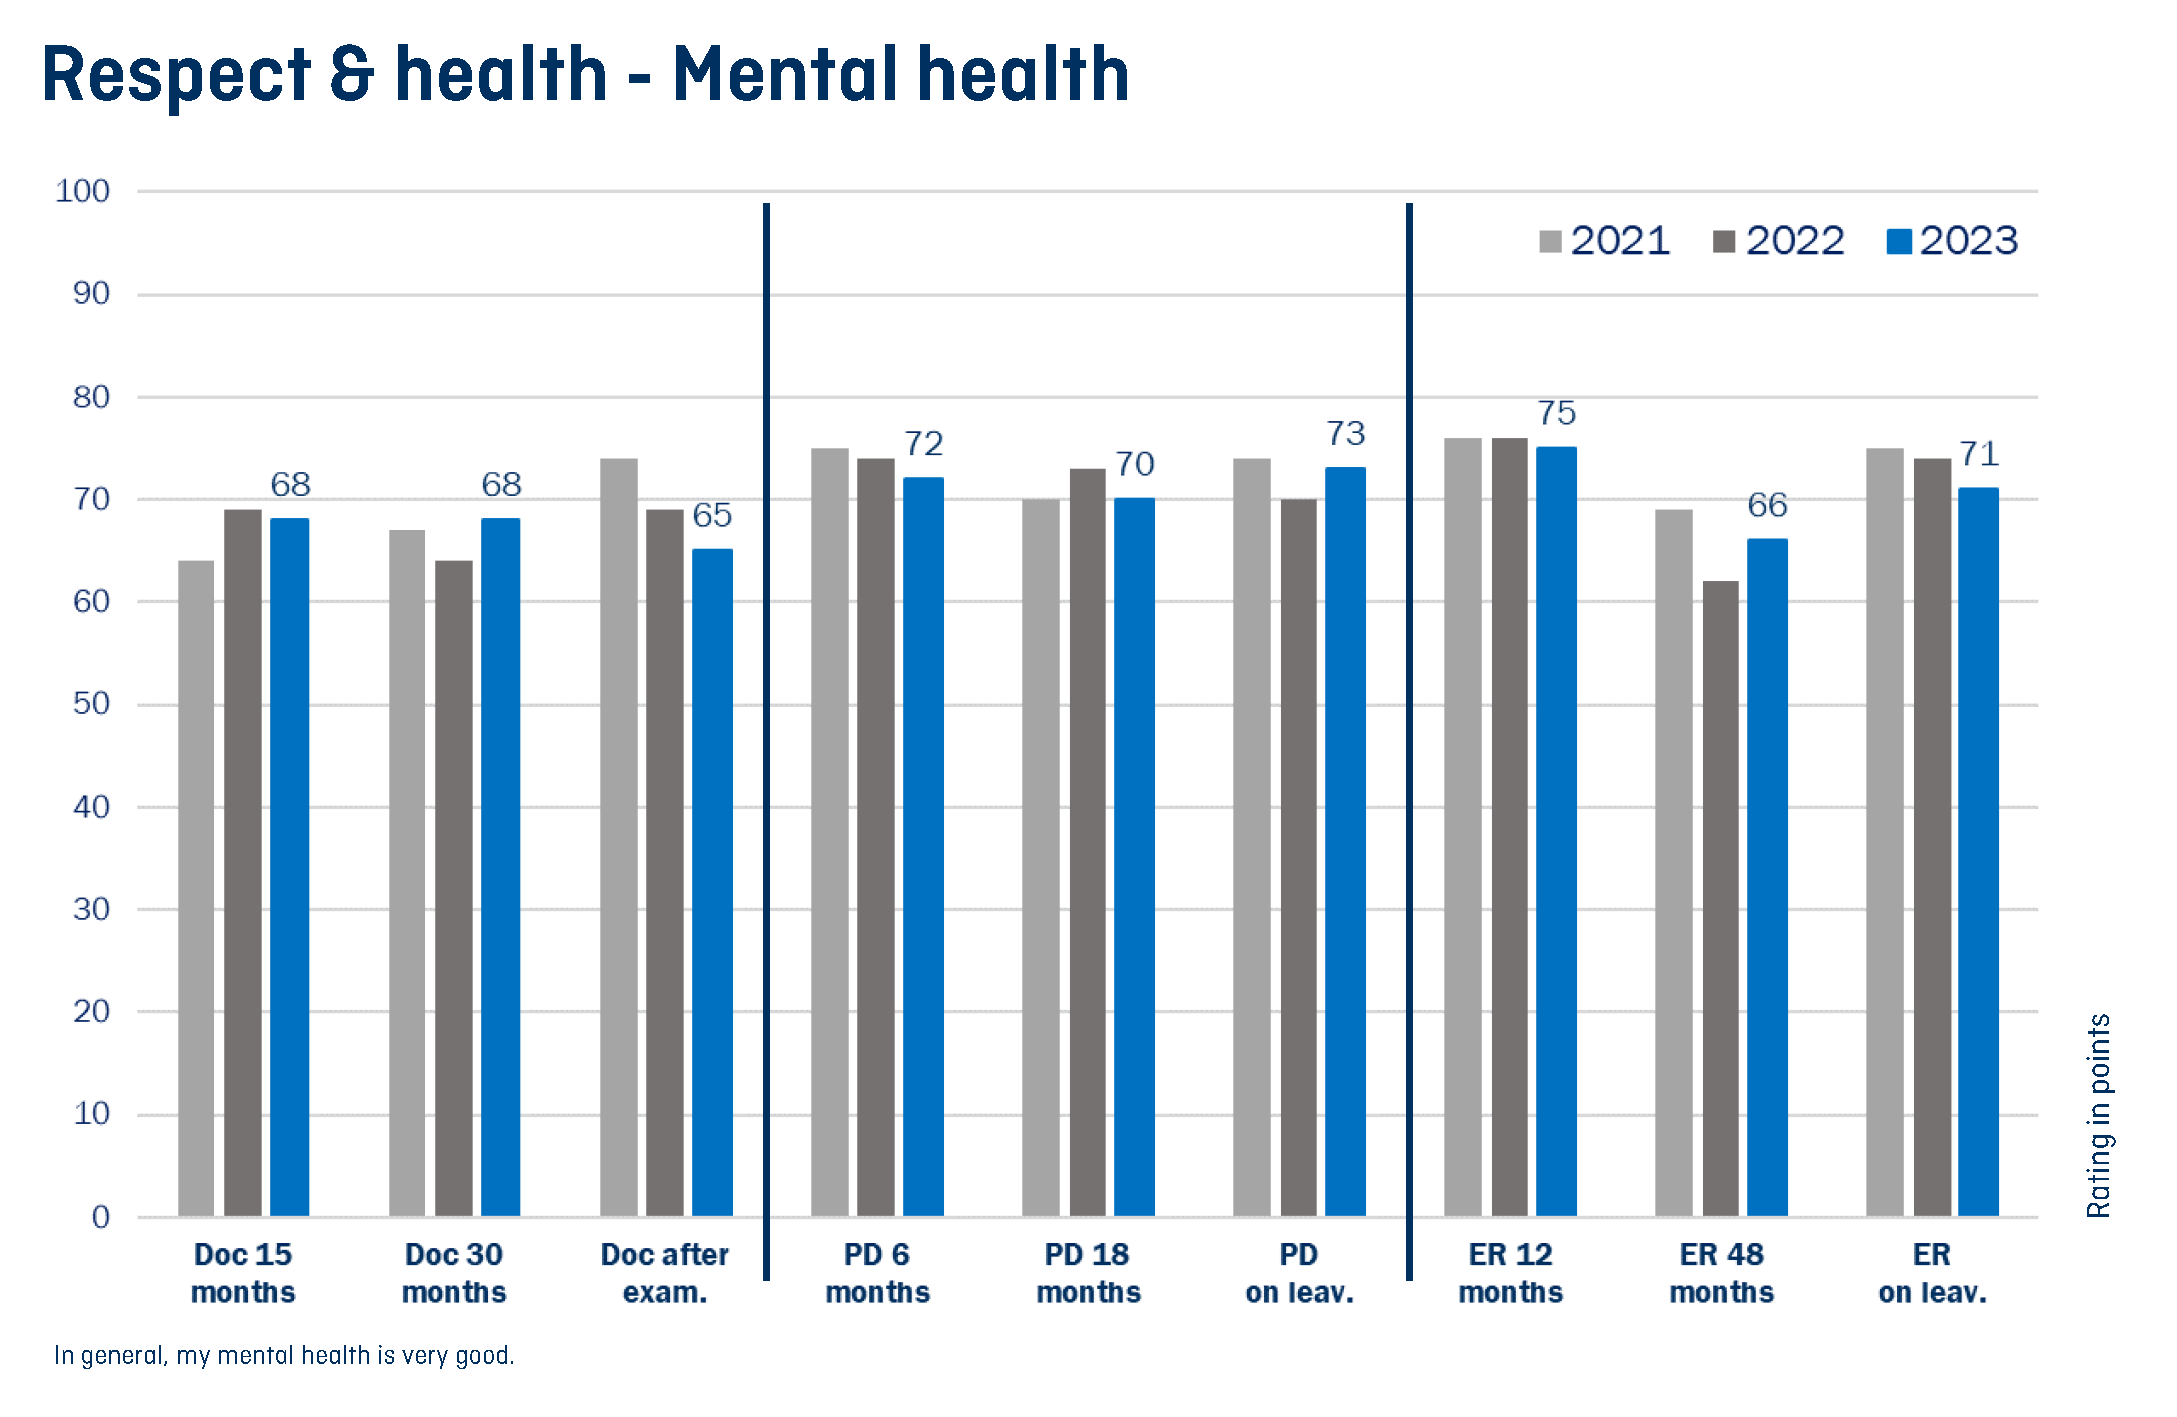 Vergrösserte Ansicht: Grafik welche die mentale Gesundheit für unterschiedliche Anstellungspositionen über die Jahre 2021, 2022 und 2023 hinweg zeigt.